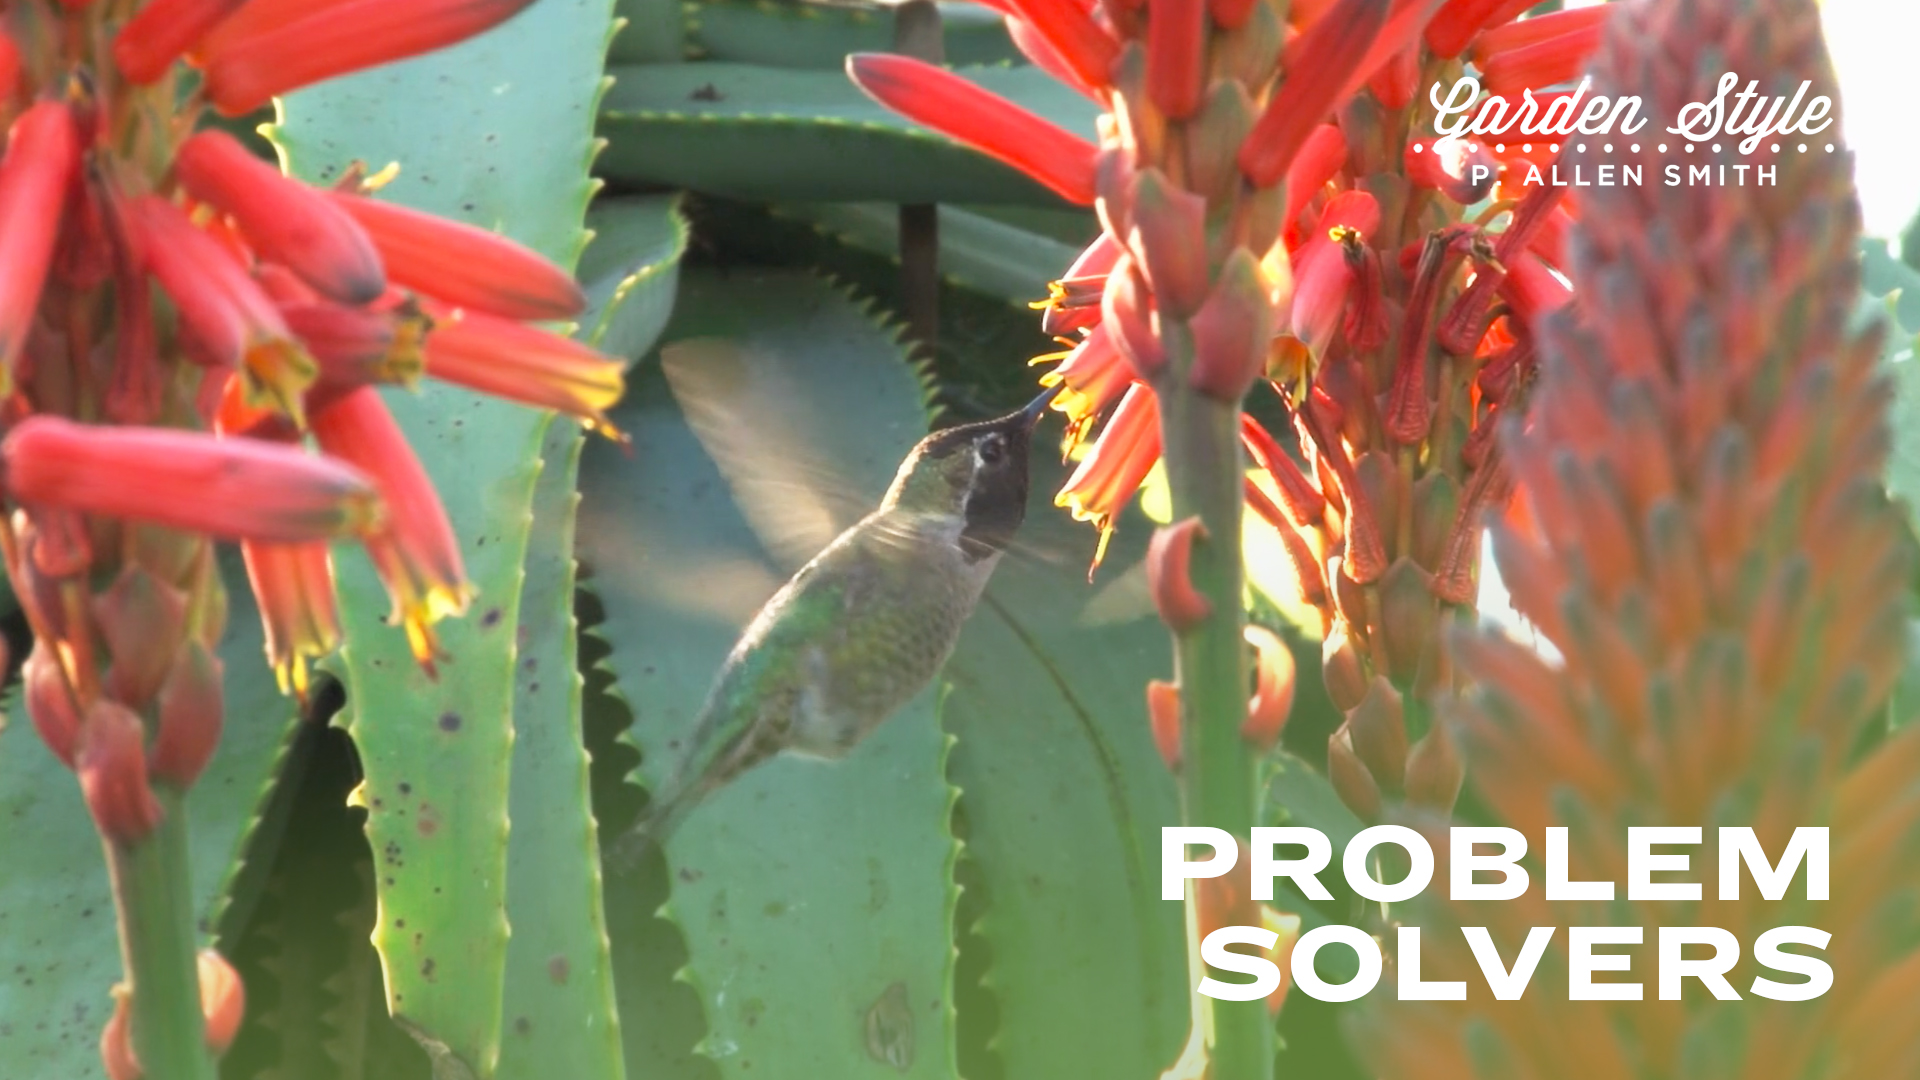 Problem Solvers | P. Allen Smith Garden Style